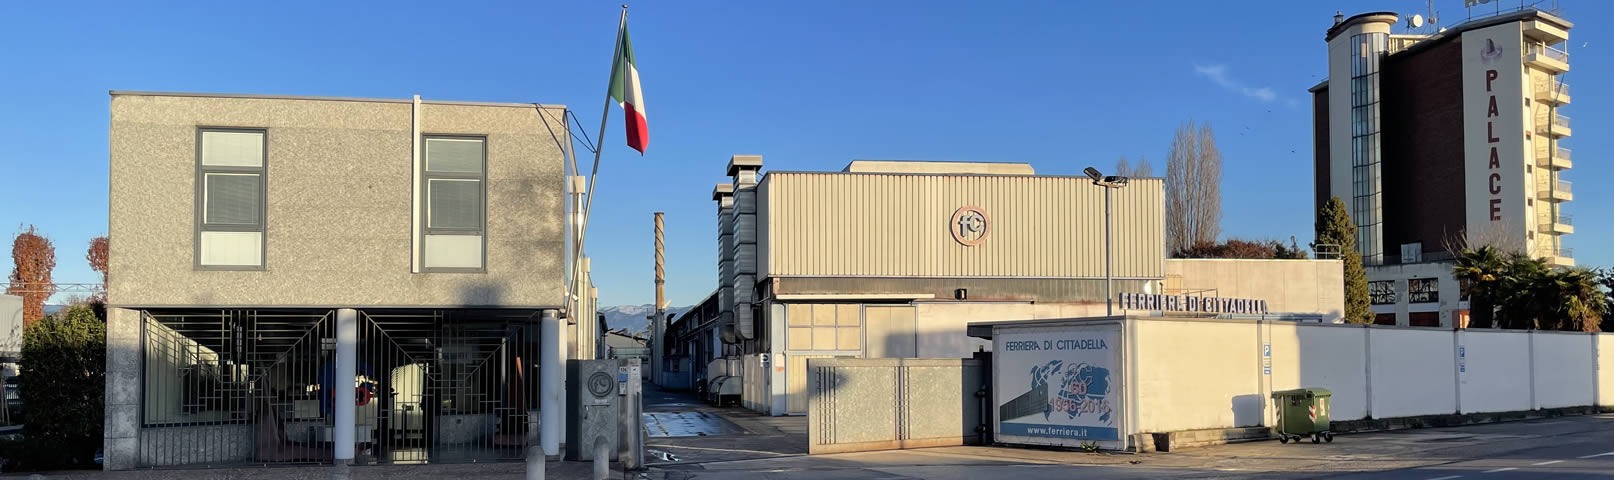 Banner Stabilimenti - Ferriera di Cittadella - Italy